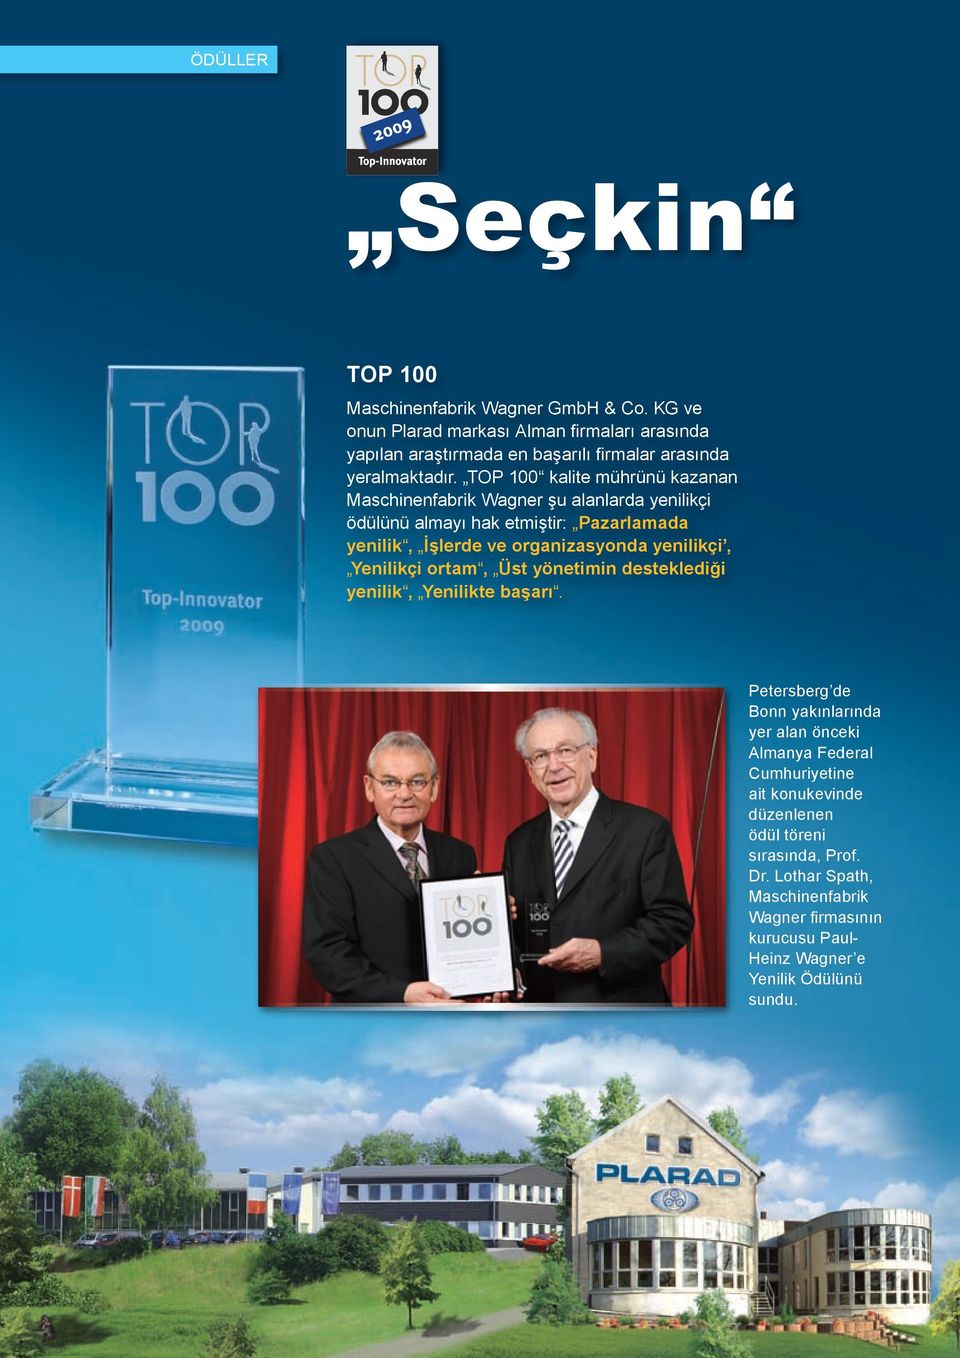 TOP 100 kalite mührünü kazanan Maschinenfabrik Wagner şu alanlarda yenilikçi ödülünü almayı hak etmiştir: Pazarlamada yenilik, İşlerde ve organizasyonda